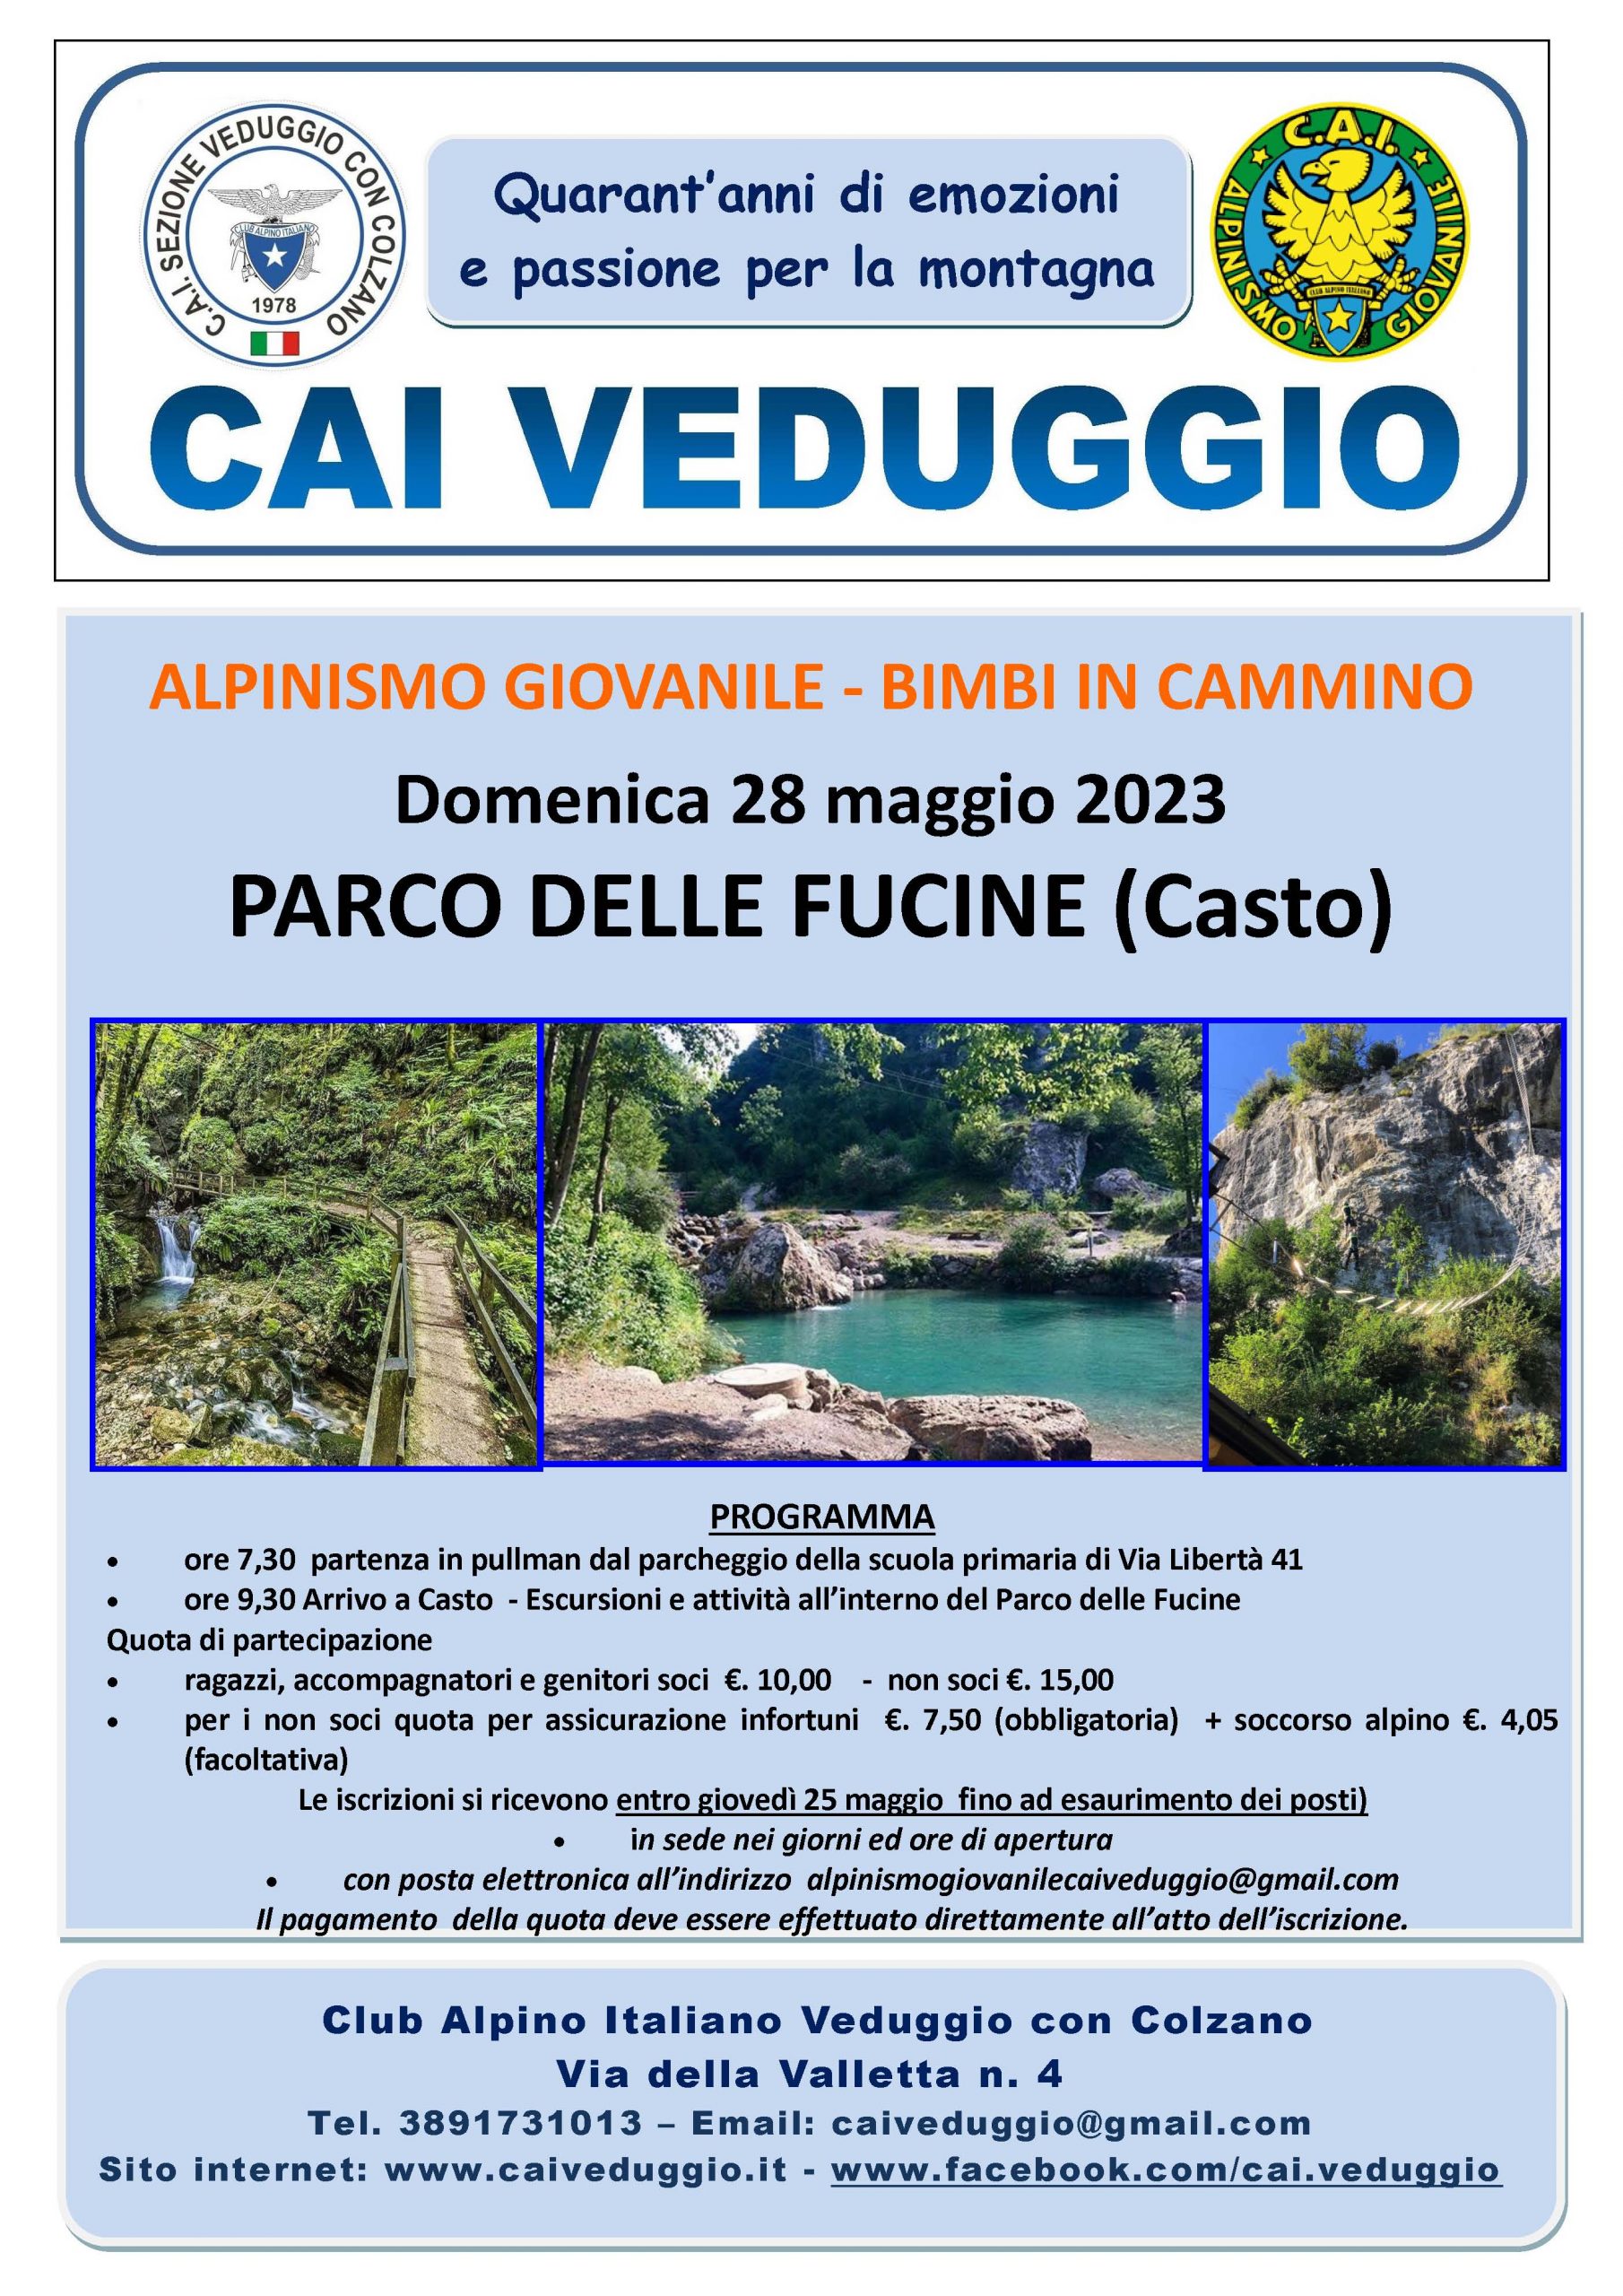 Domenica 28 maggio 2023 – Parco delle Fucine/Casto (Alpinismo Giovanile – Bimbi in cammino)